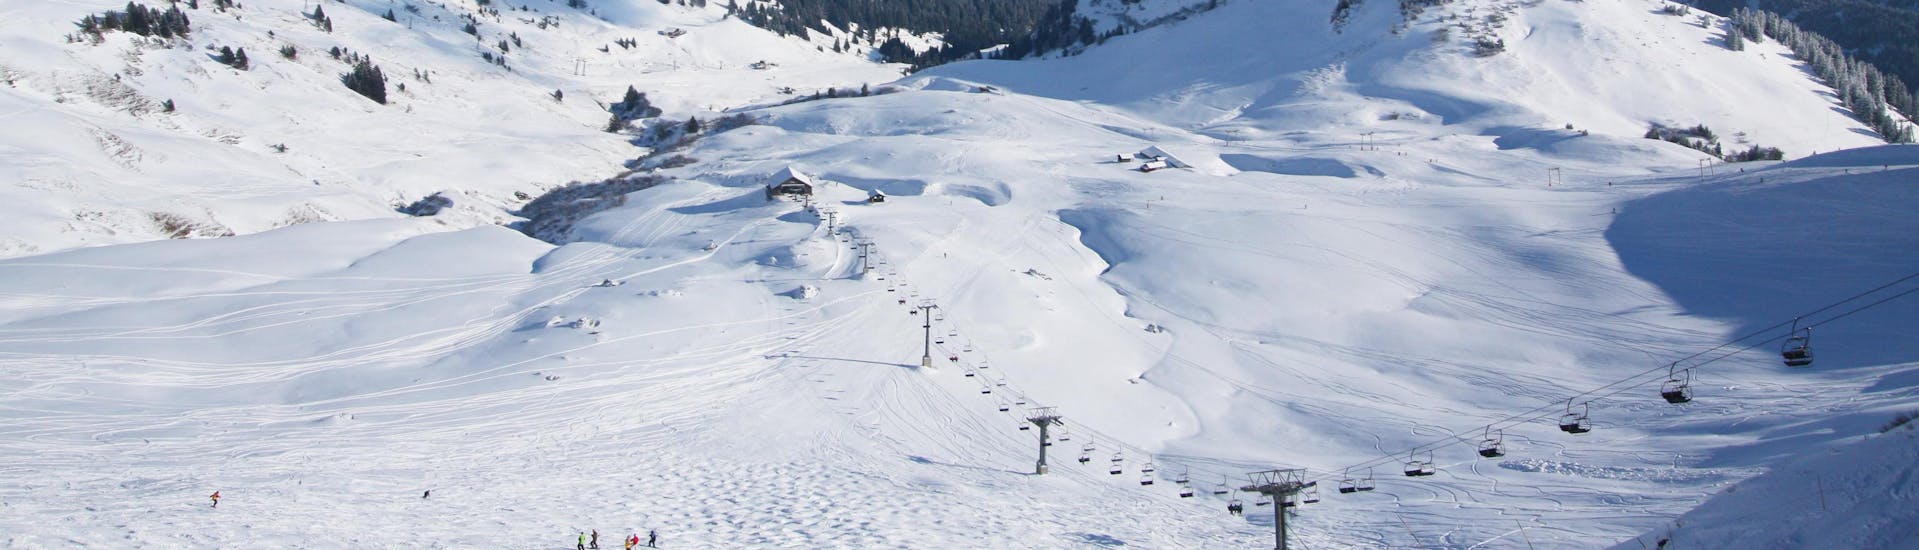 Une vue des pistes enneigées de la station de ski suisse des Crosets où les écoles de ski locales offrent un large éventail de cours de ski à ceux qui veulent apprendre le ski.